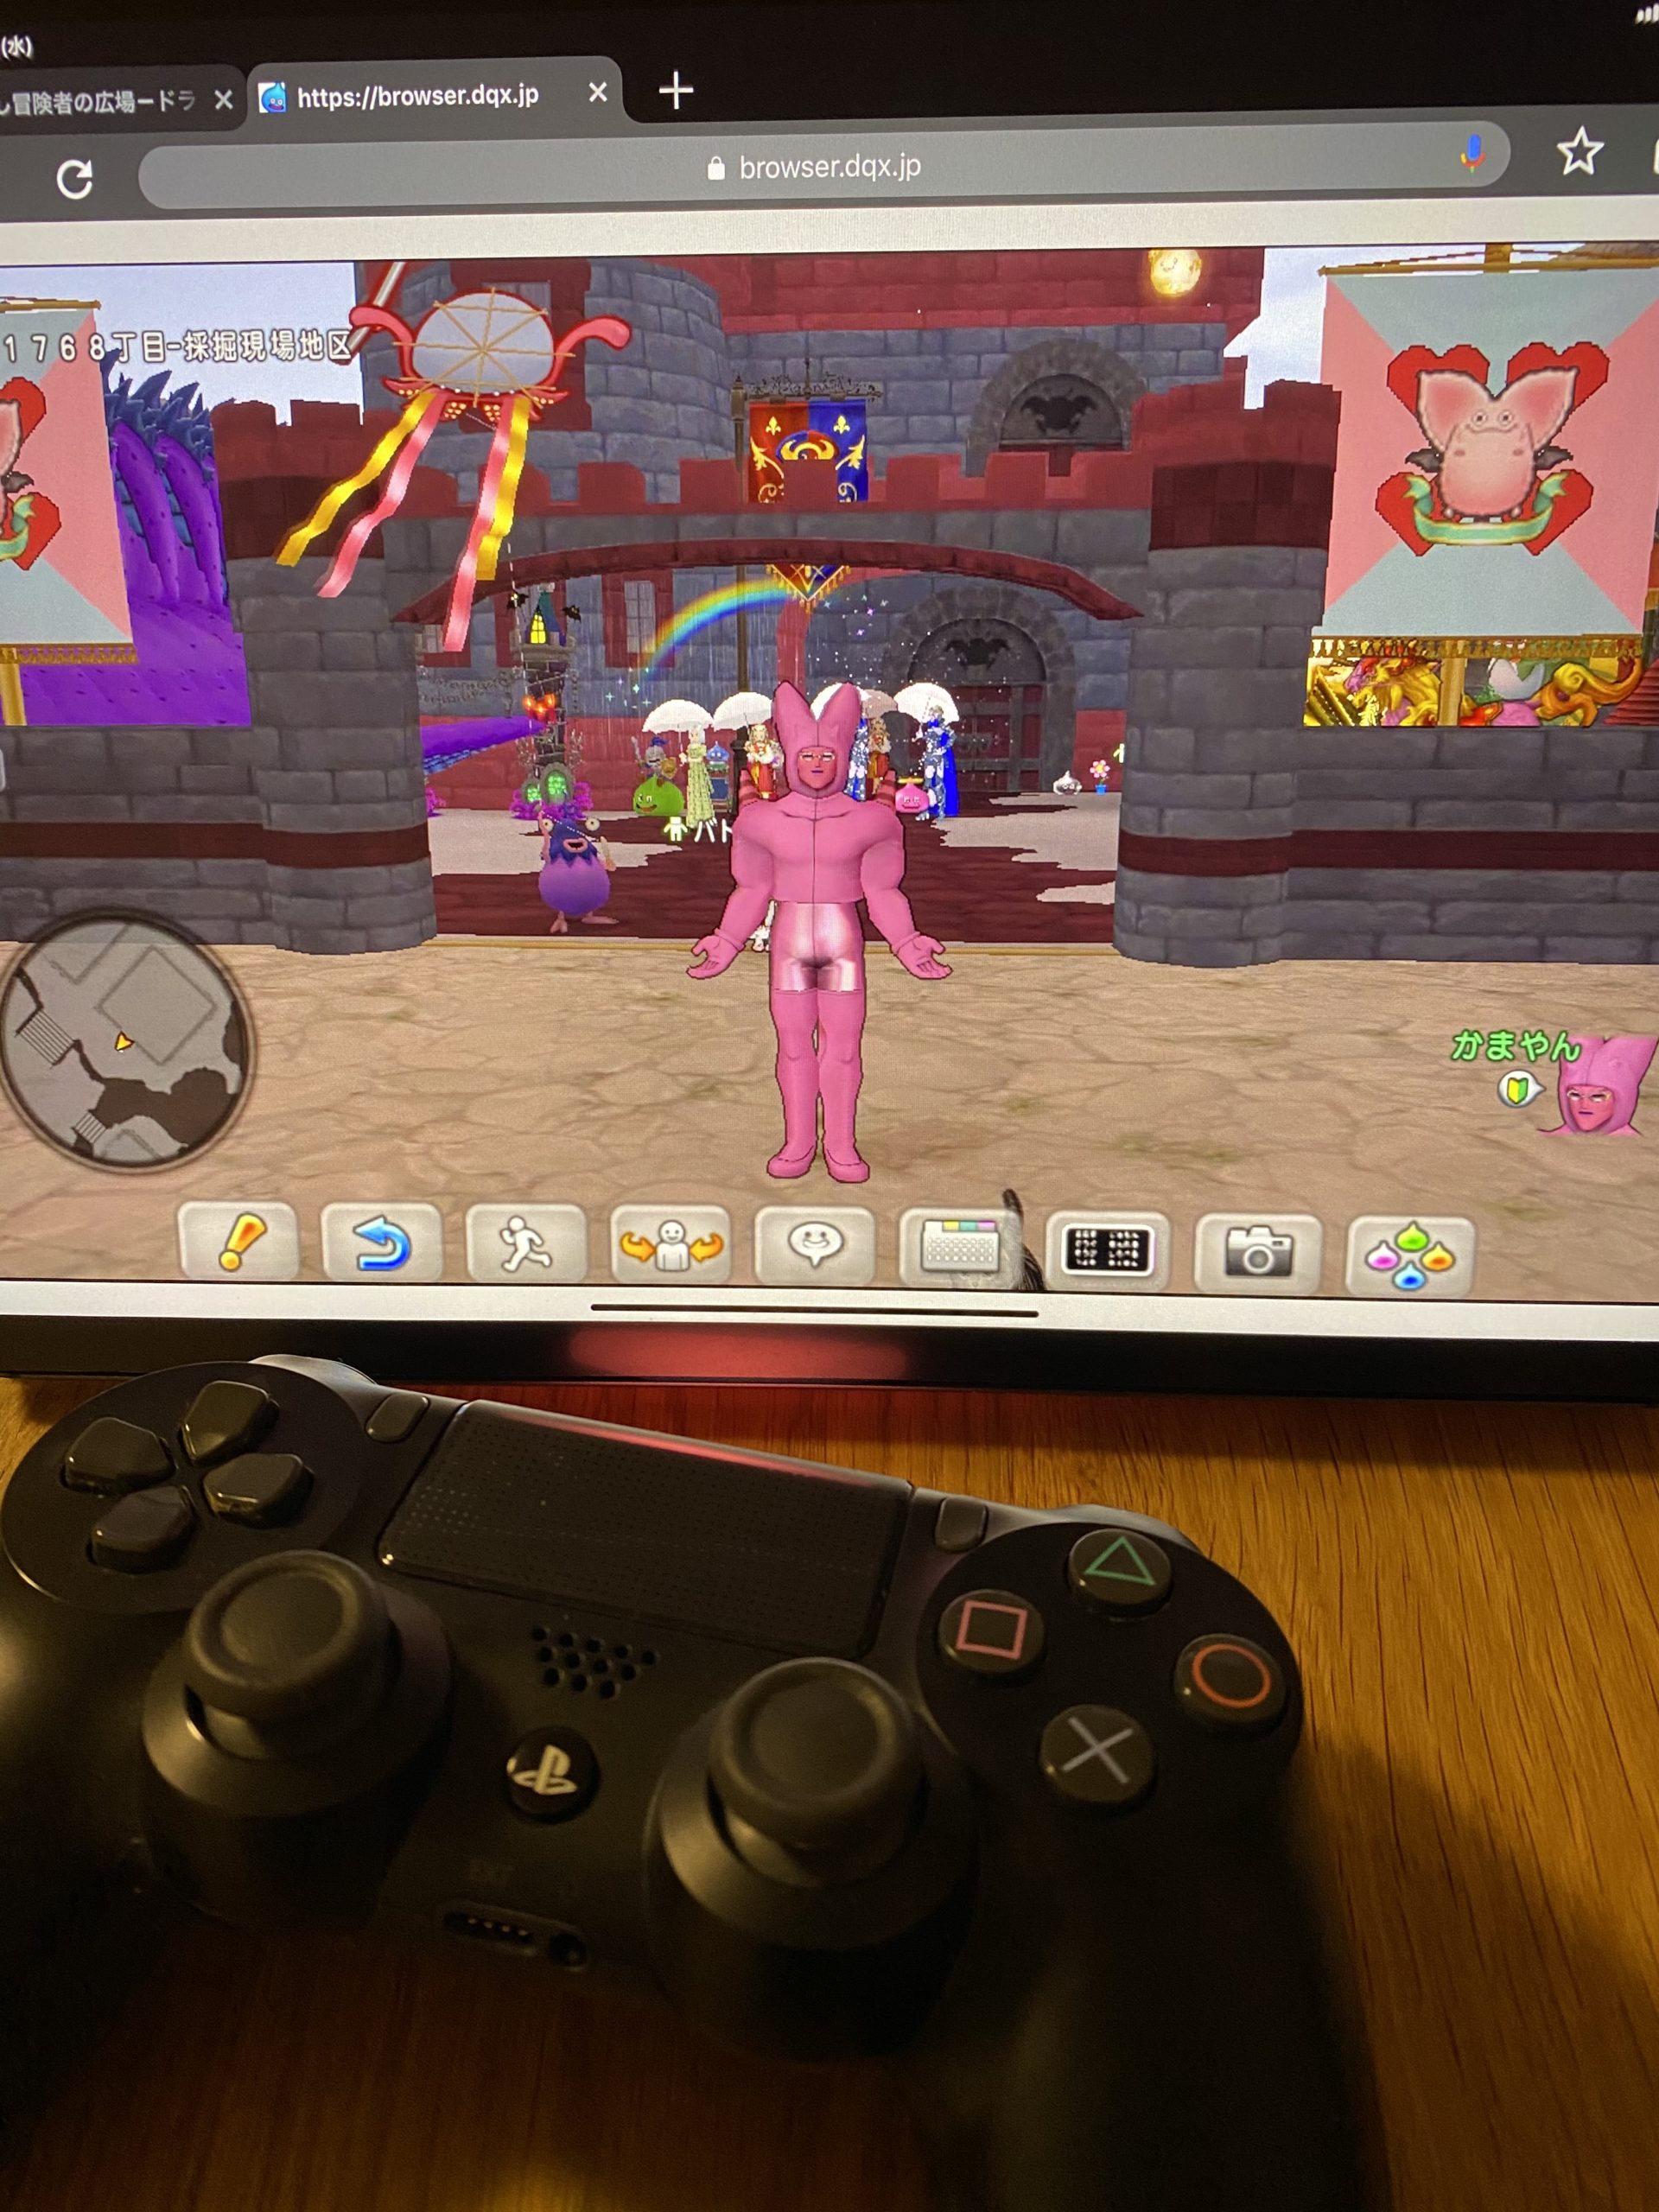 ブラウザ版 Ps4コントローラーをつかってブラウザ版ドラクエ10をプレイ わがままエル子とピンクの妖精